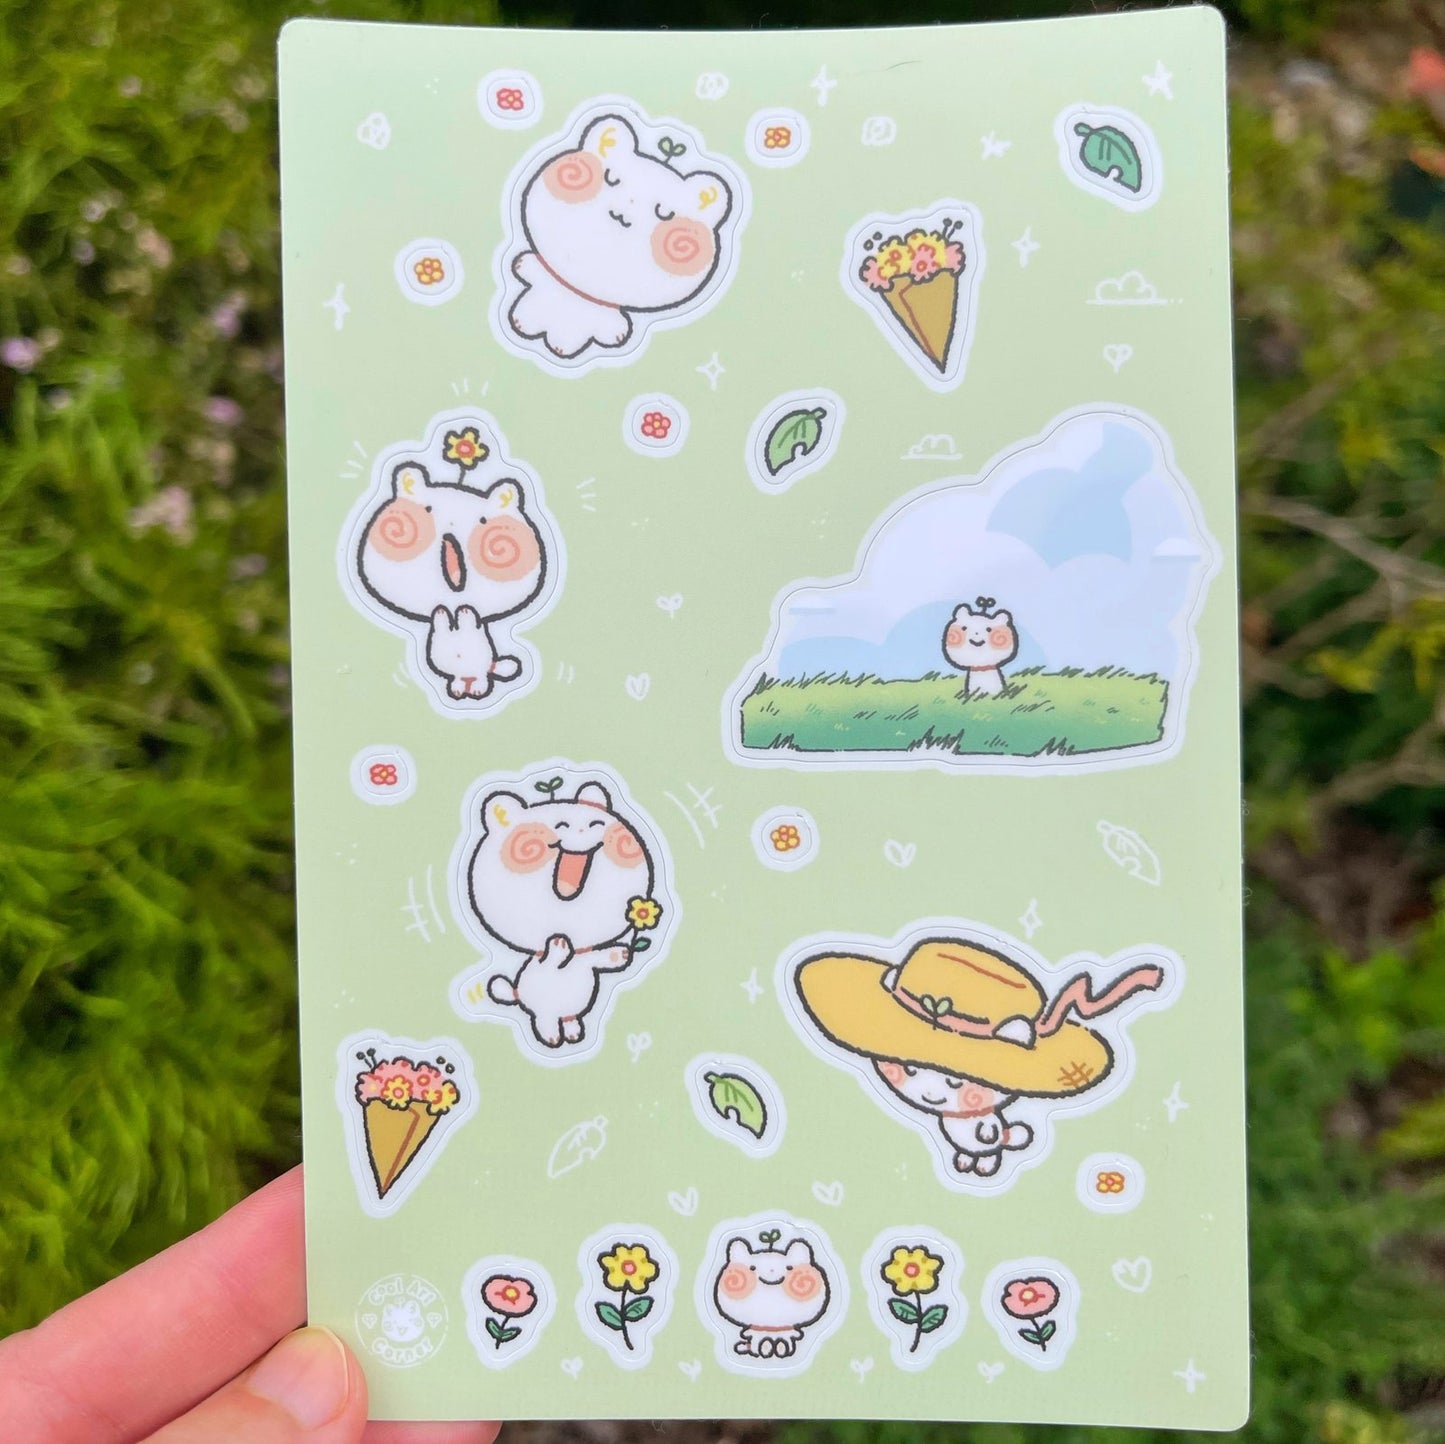 Sprouts in a Field Sticker Sheet